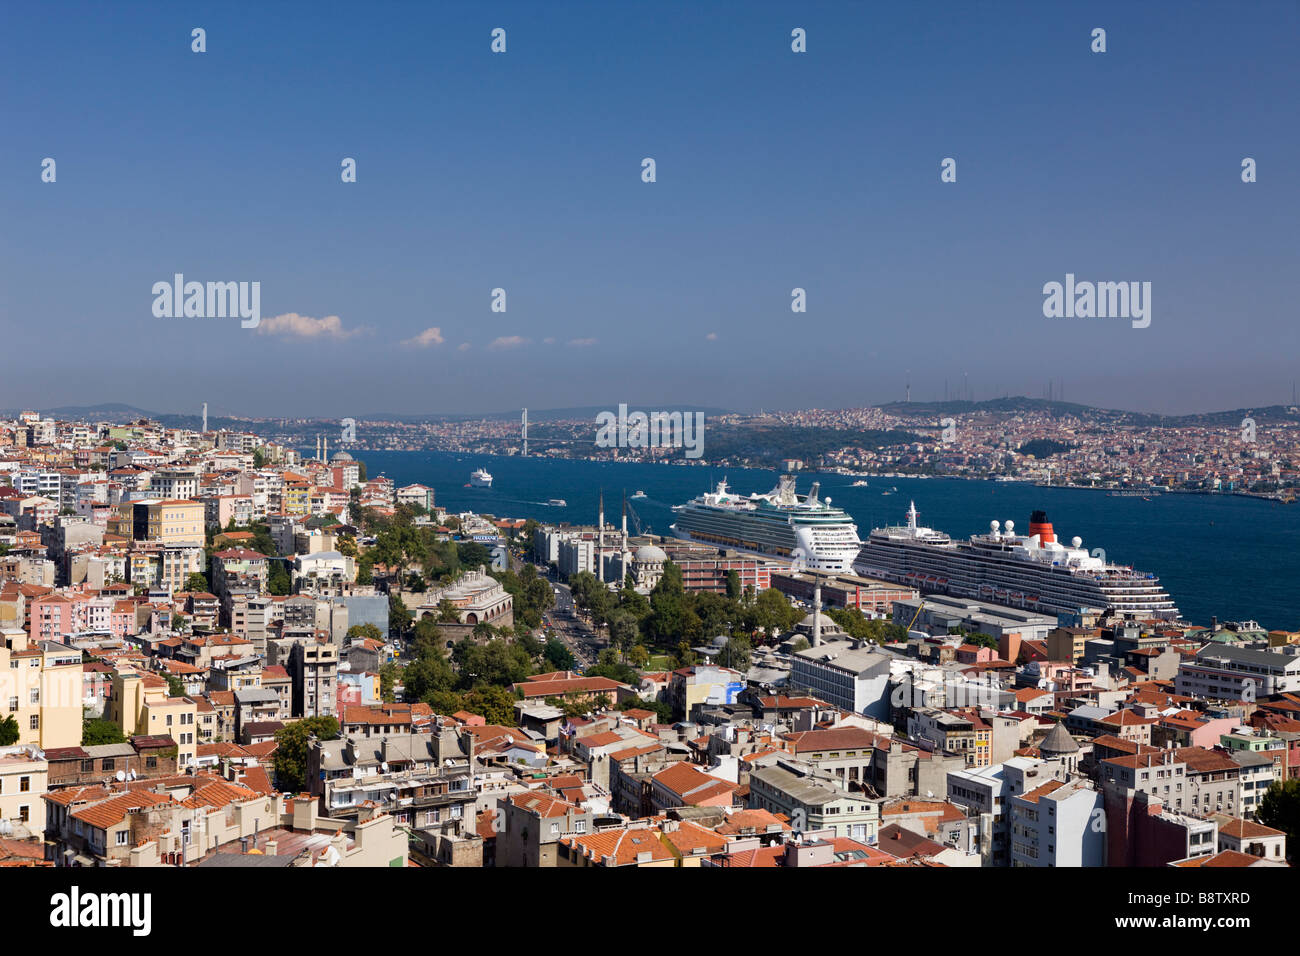 Vista desde la torre de Galata al Bósforo y Asien Continente Estambul Turquia Foto de stock